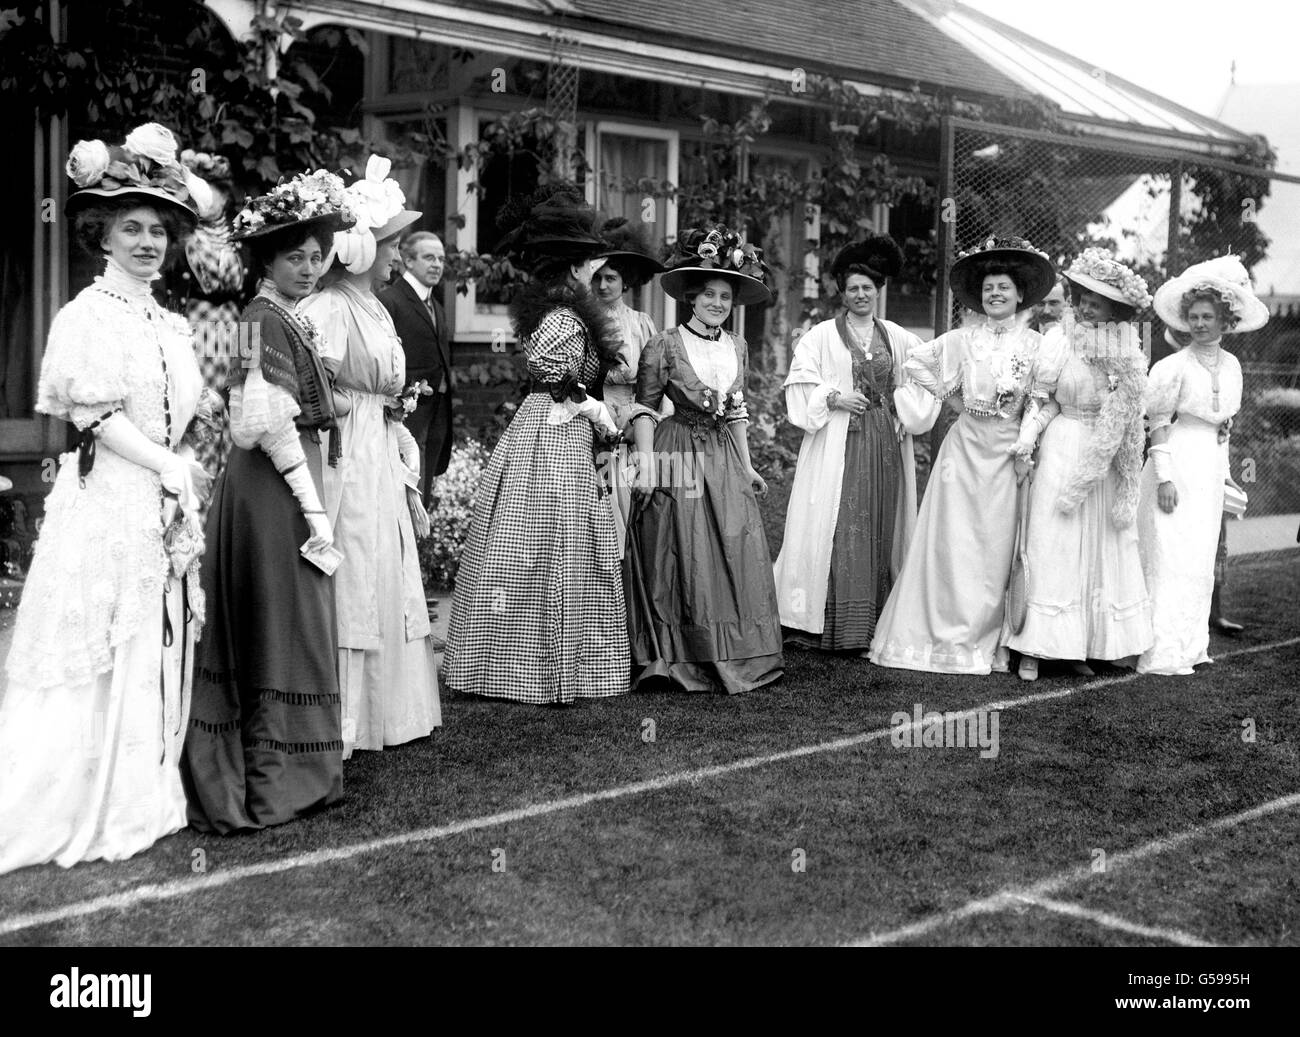 Edwardian Fashion - 1906 Stock Photo